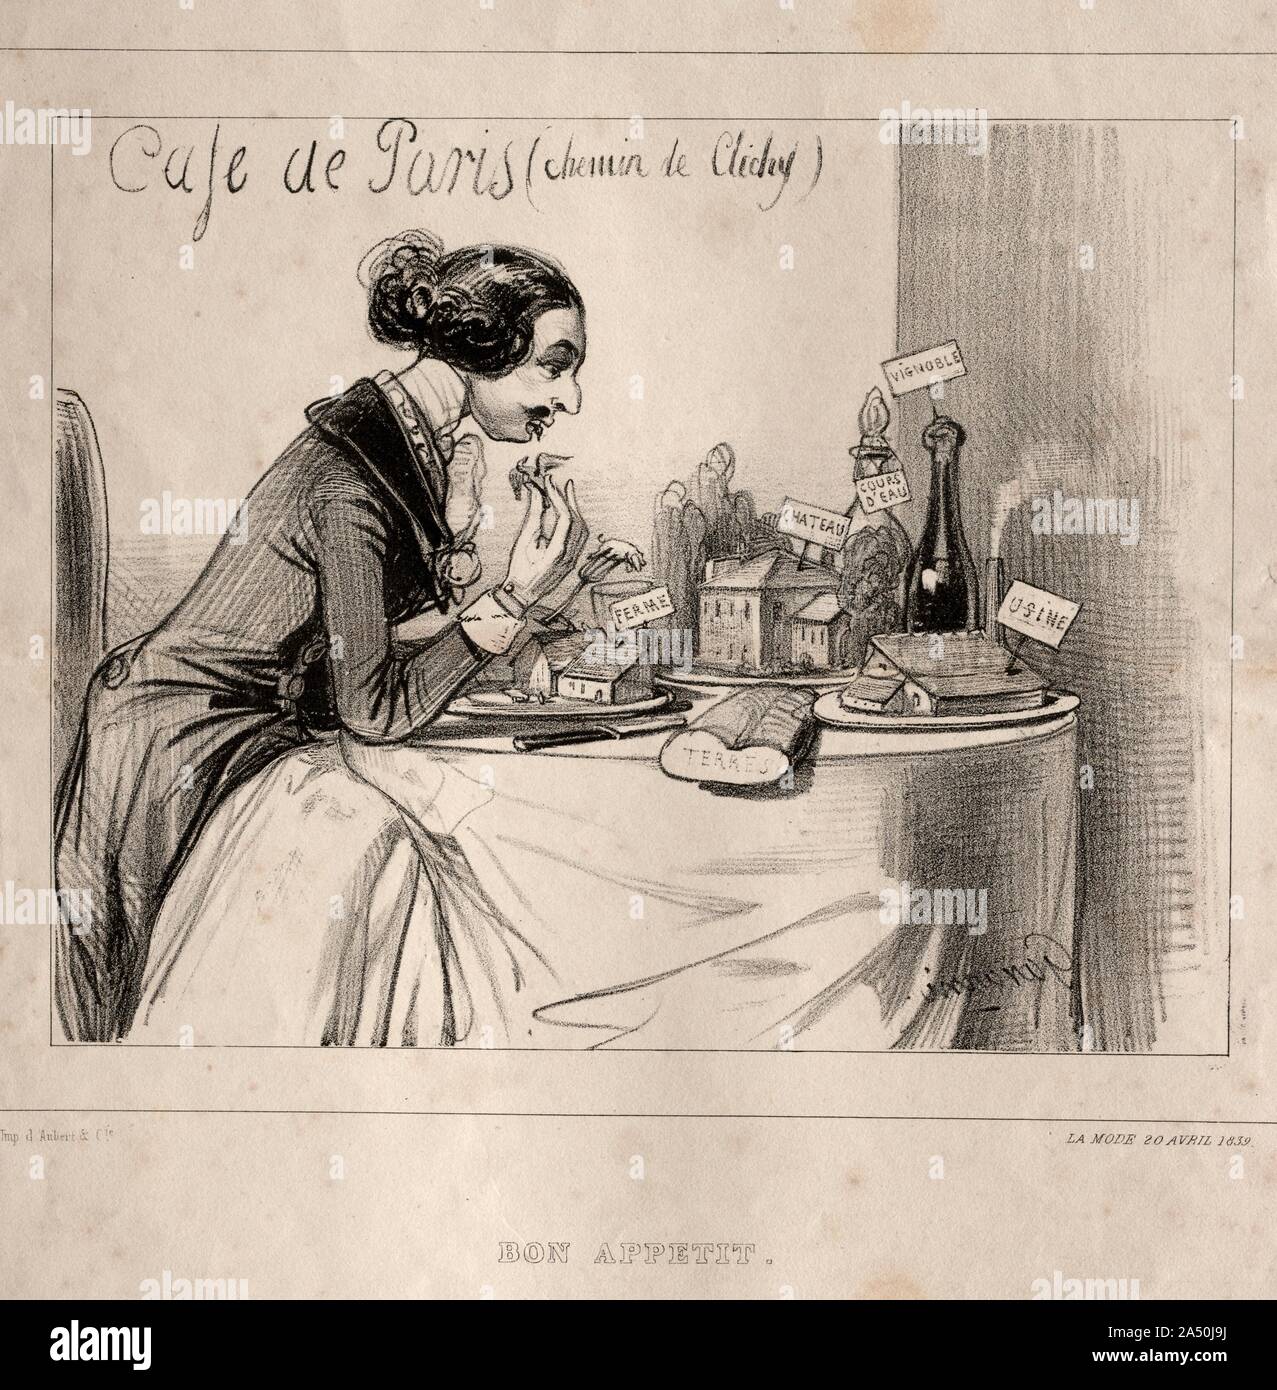 Croquis Fantastique: Bon Appetit, 1839. Stock Photo